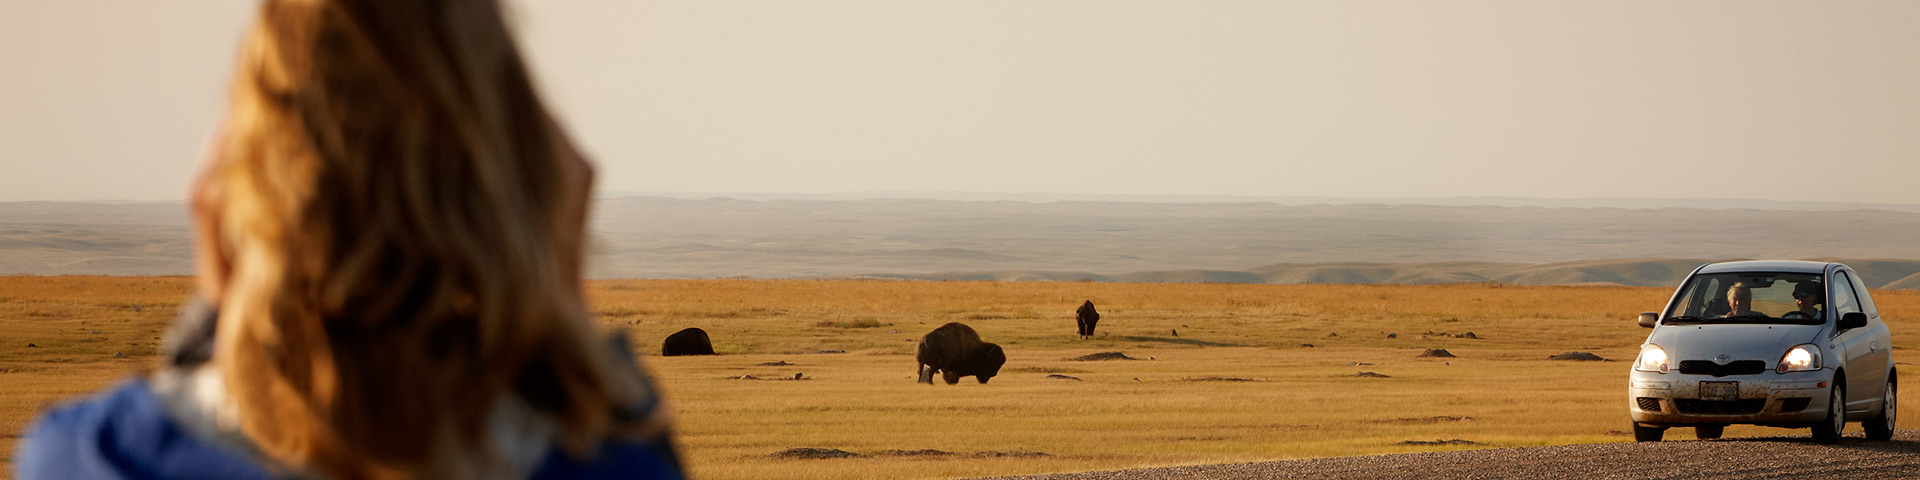 Des visiteurs observent les bisons dans les plaines.